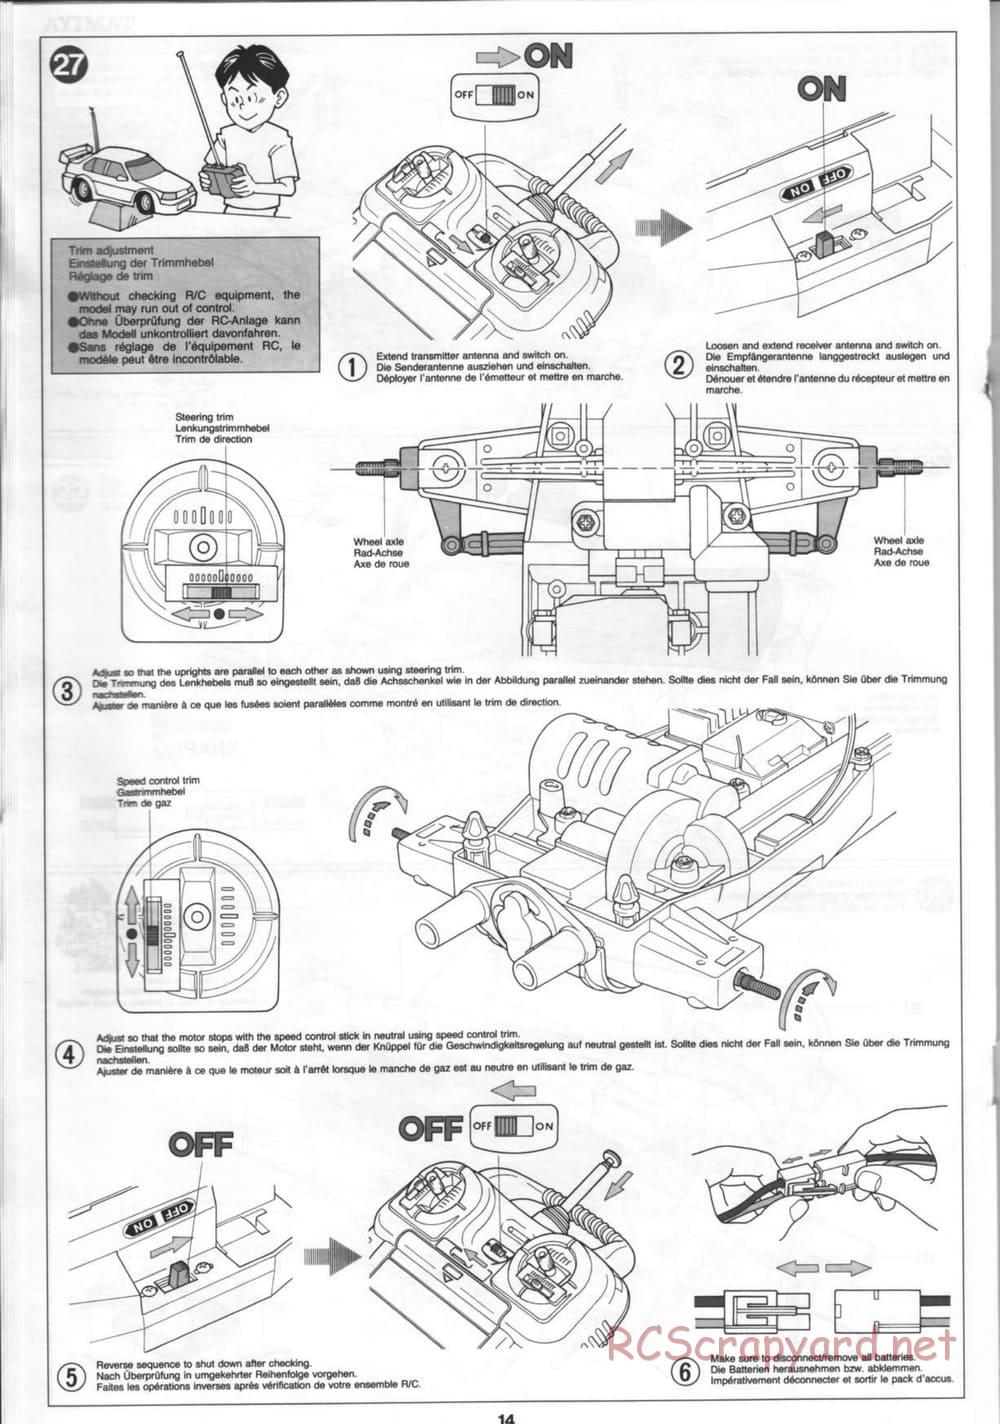 Tamiya - Thunder Blitz - Boy's 4WD Chassis - Manual - Page 14